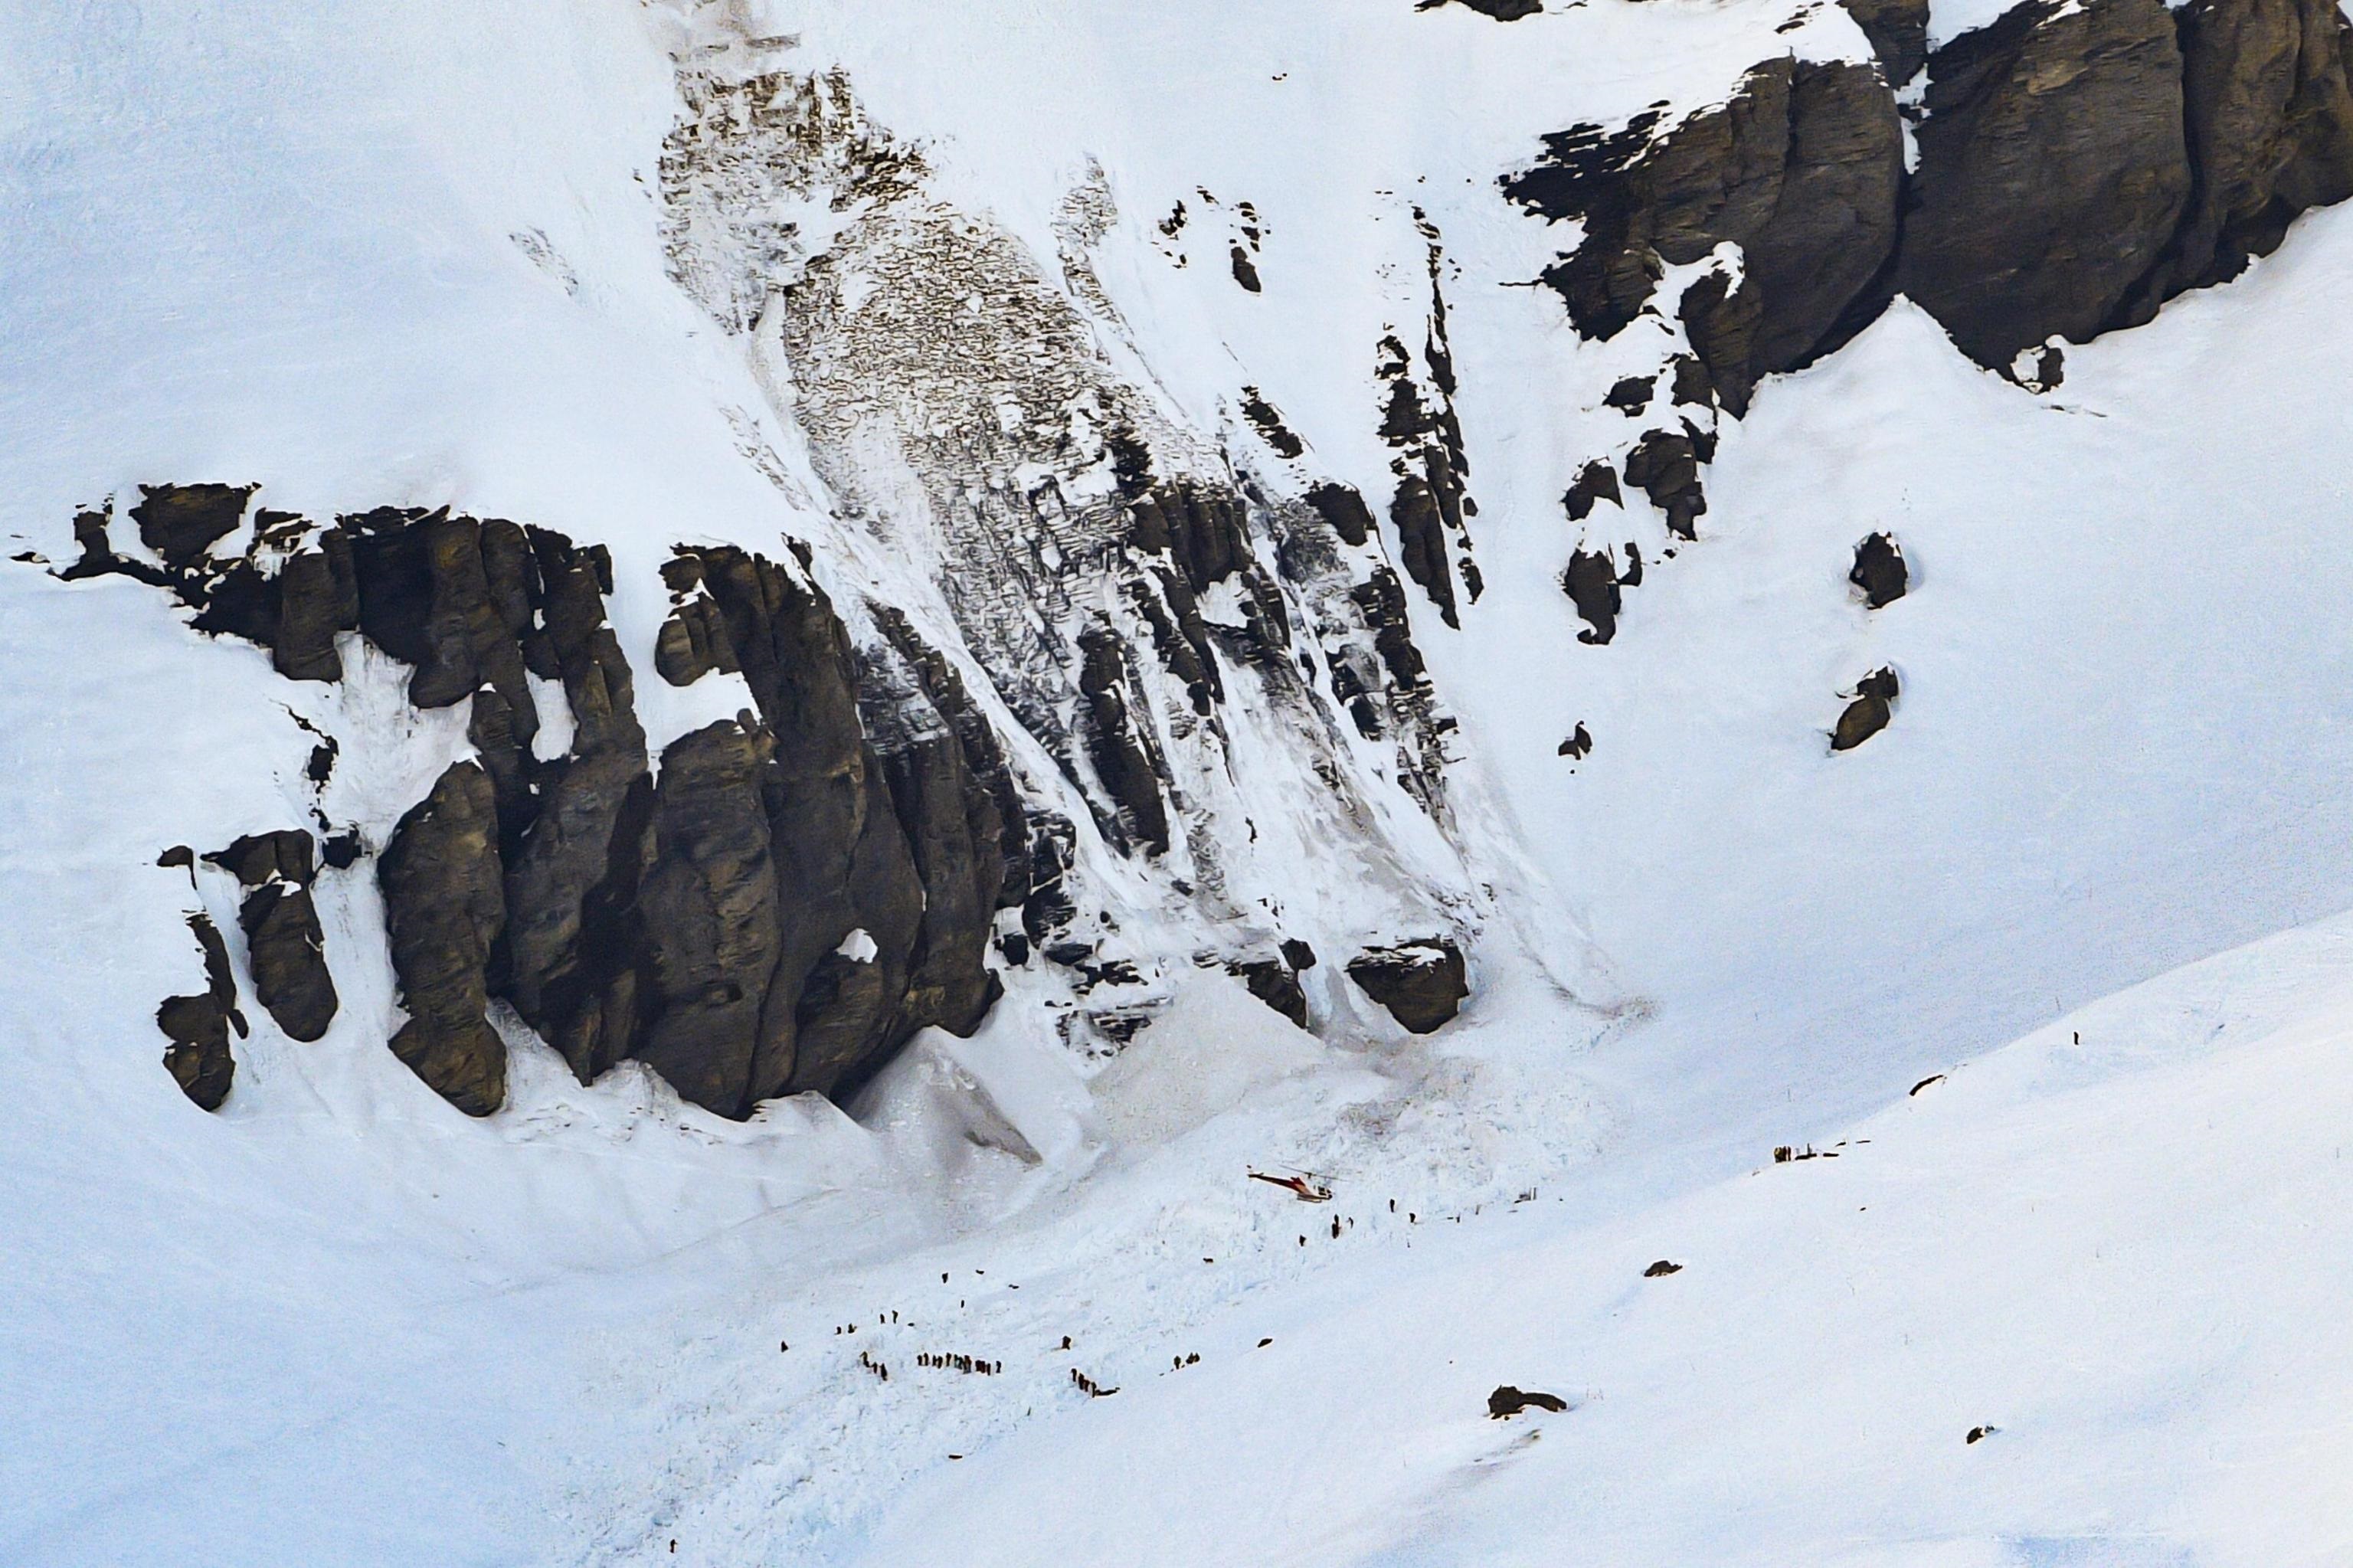 Una valanga si è abbattuta sulla rinomata località sciistica di Crans Montana, nelle Alpi svizzere. Tra i quattro sciatori fino ad ora recuperati un poliziotto francese di 34 anni, morto nella notte per le gravi ferite riportate.